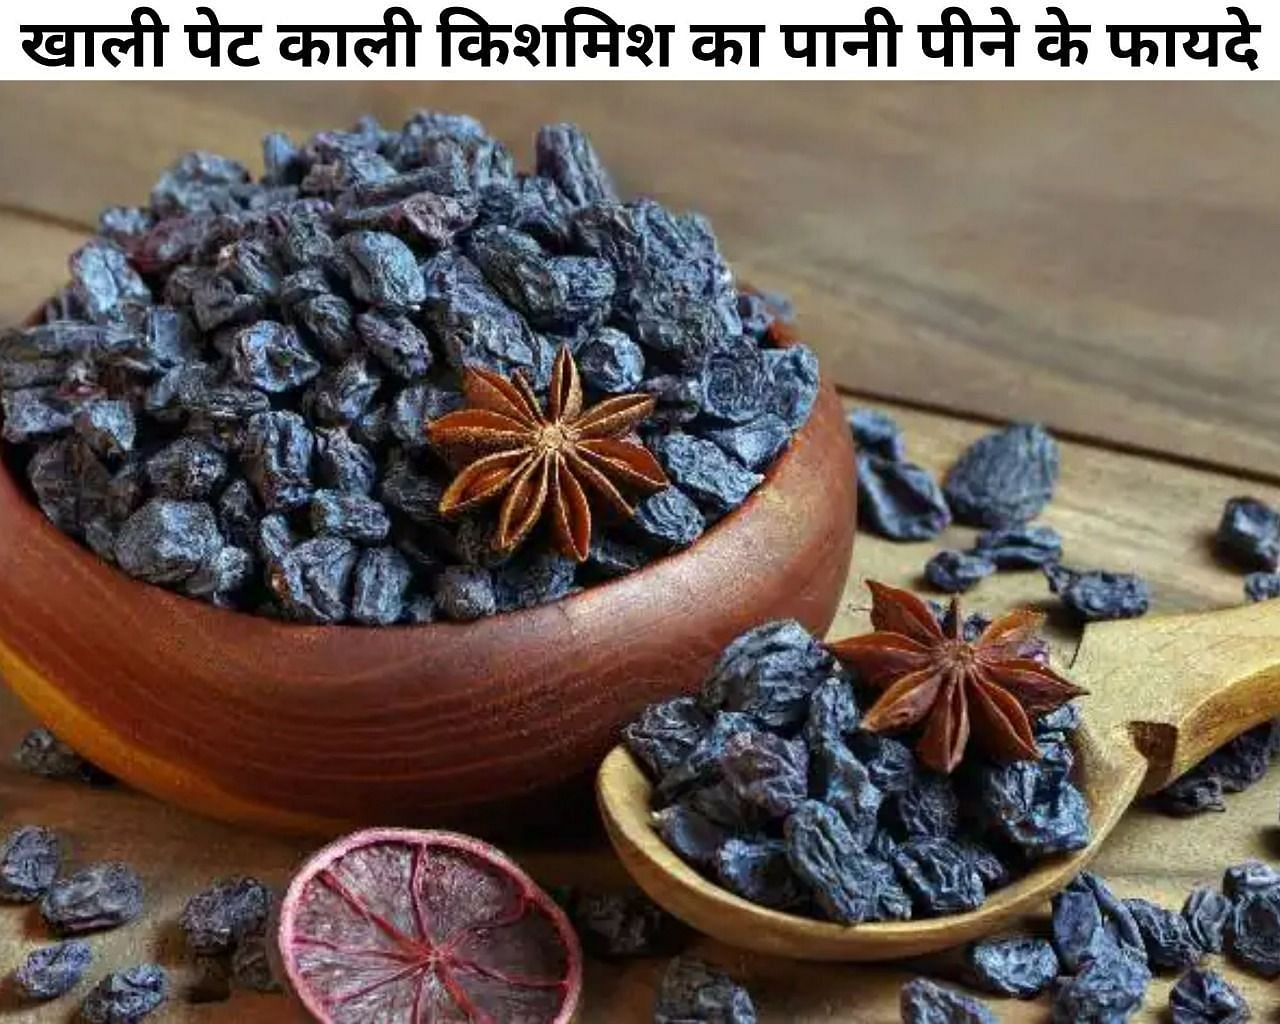 खाली पेट काली किशमिश का पानी पीने के फायदे (फोटो - sportskeeda hindi)